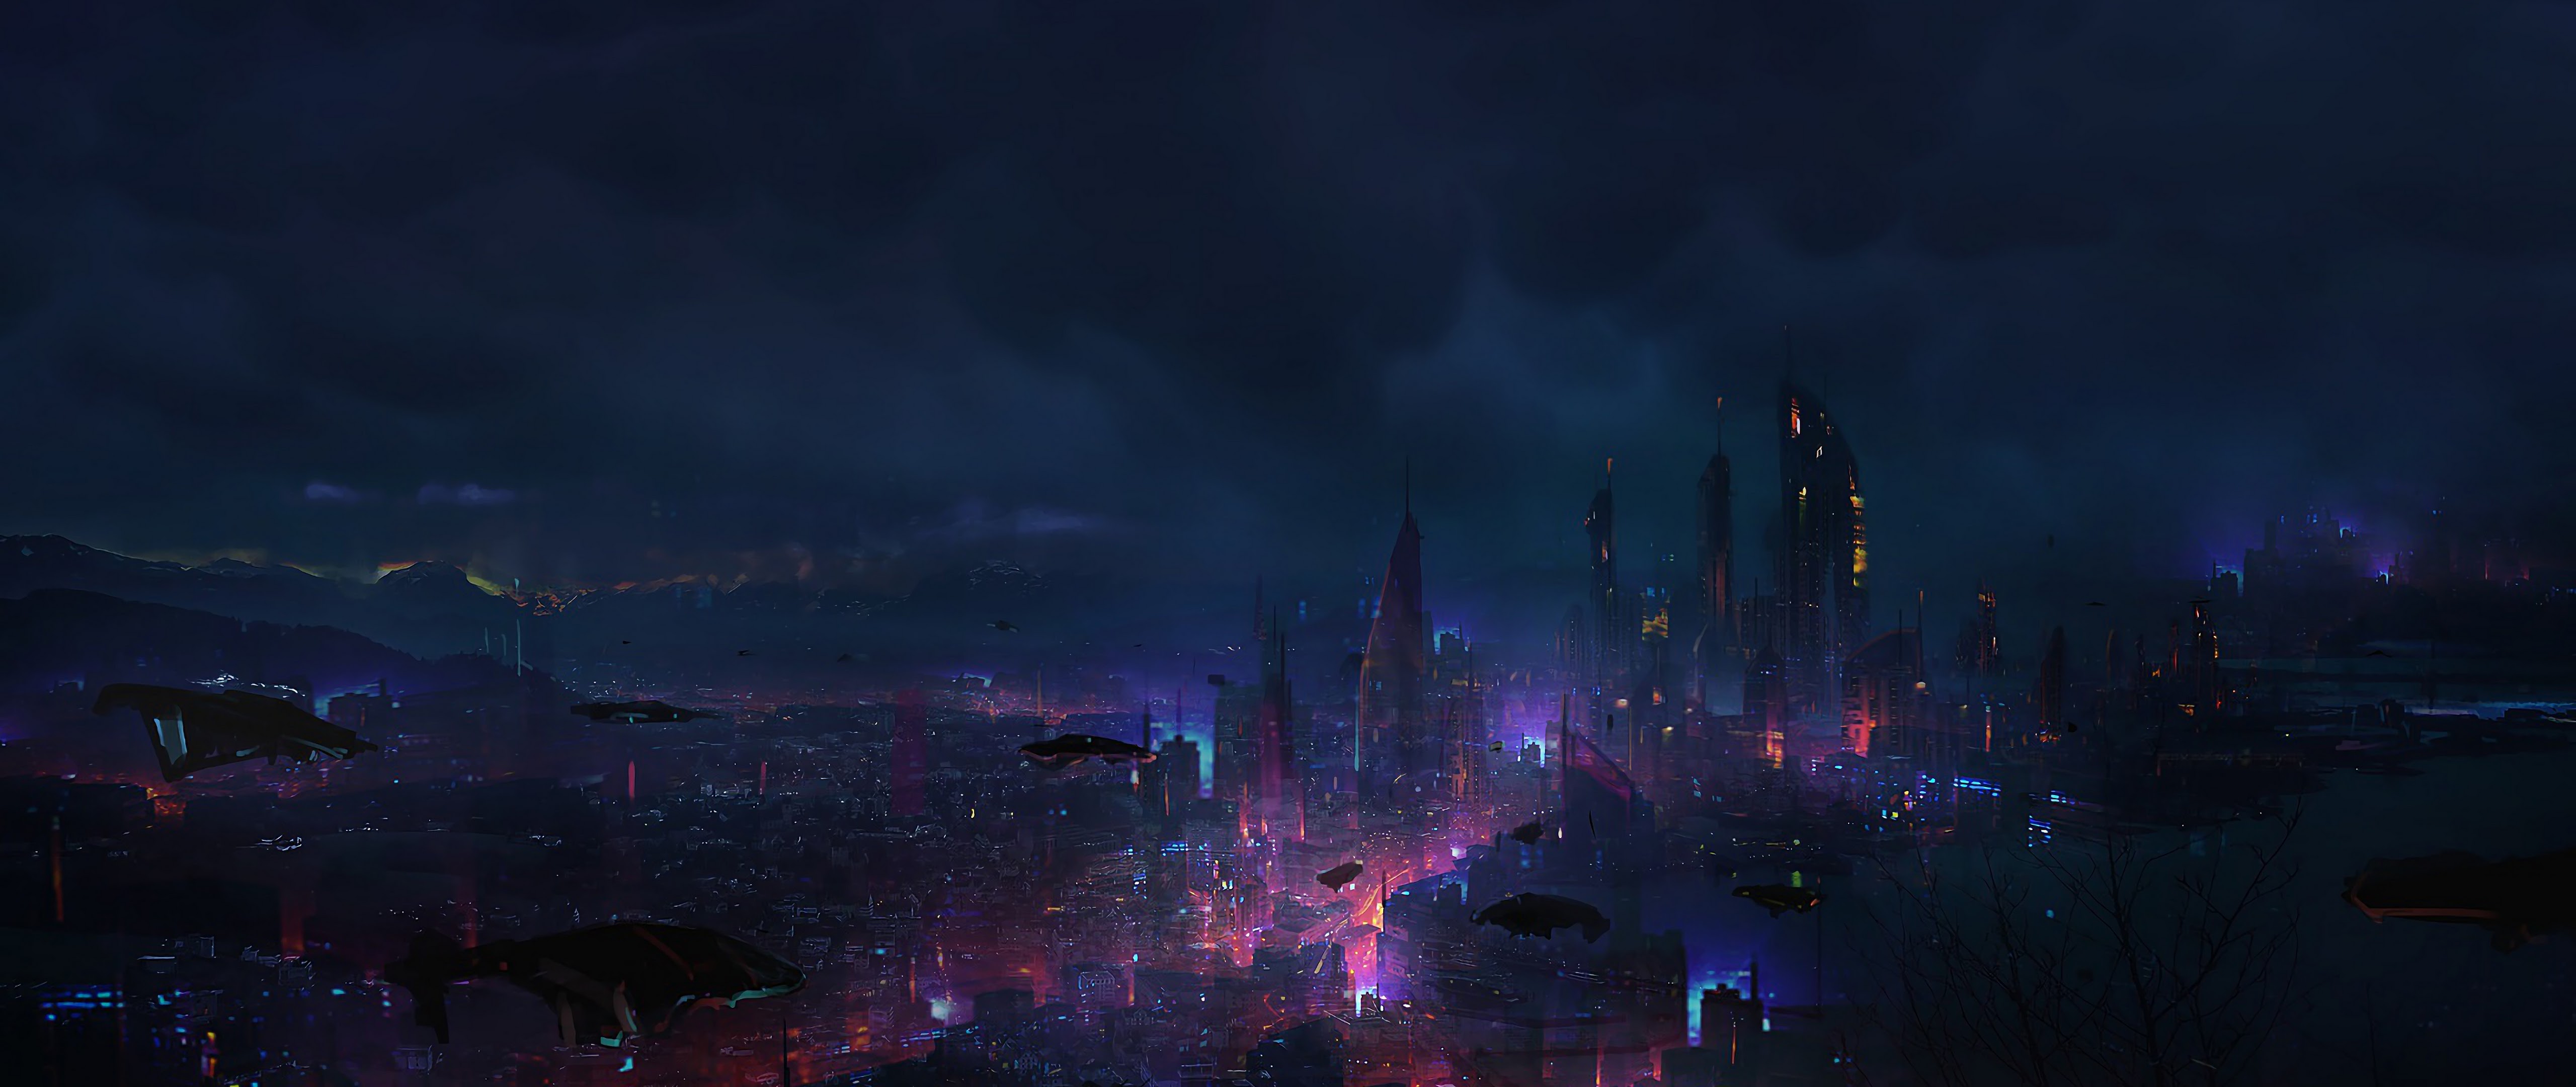 Tải ảnh phong cảnh đêm thành phố Cyberpunk để khám phá những gì khó ai có thể ngờ tới. Với chúng tôi, bạn sẽ được mở ra một khoảng không giới hạn tràn đầy nhiệt huyết mới lạ.